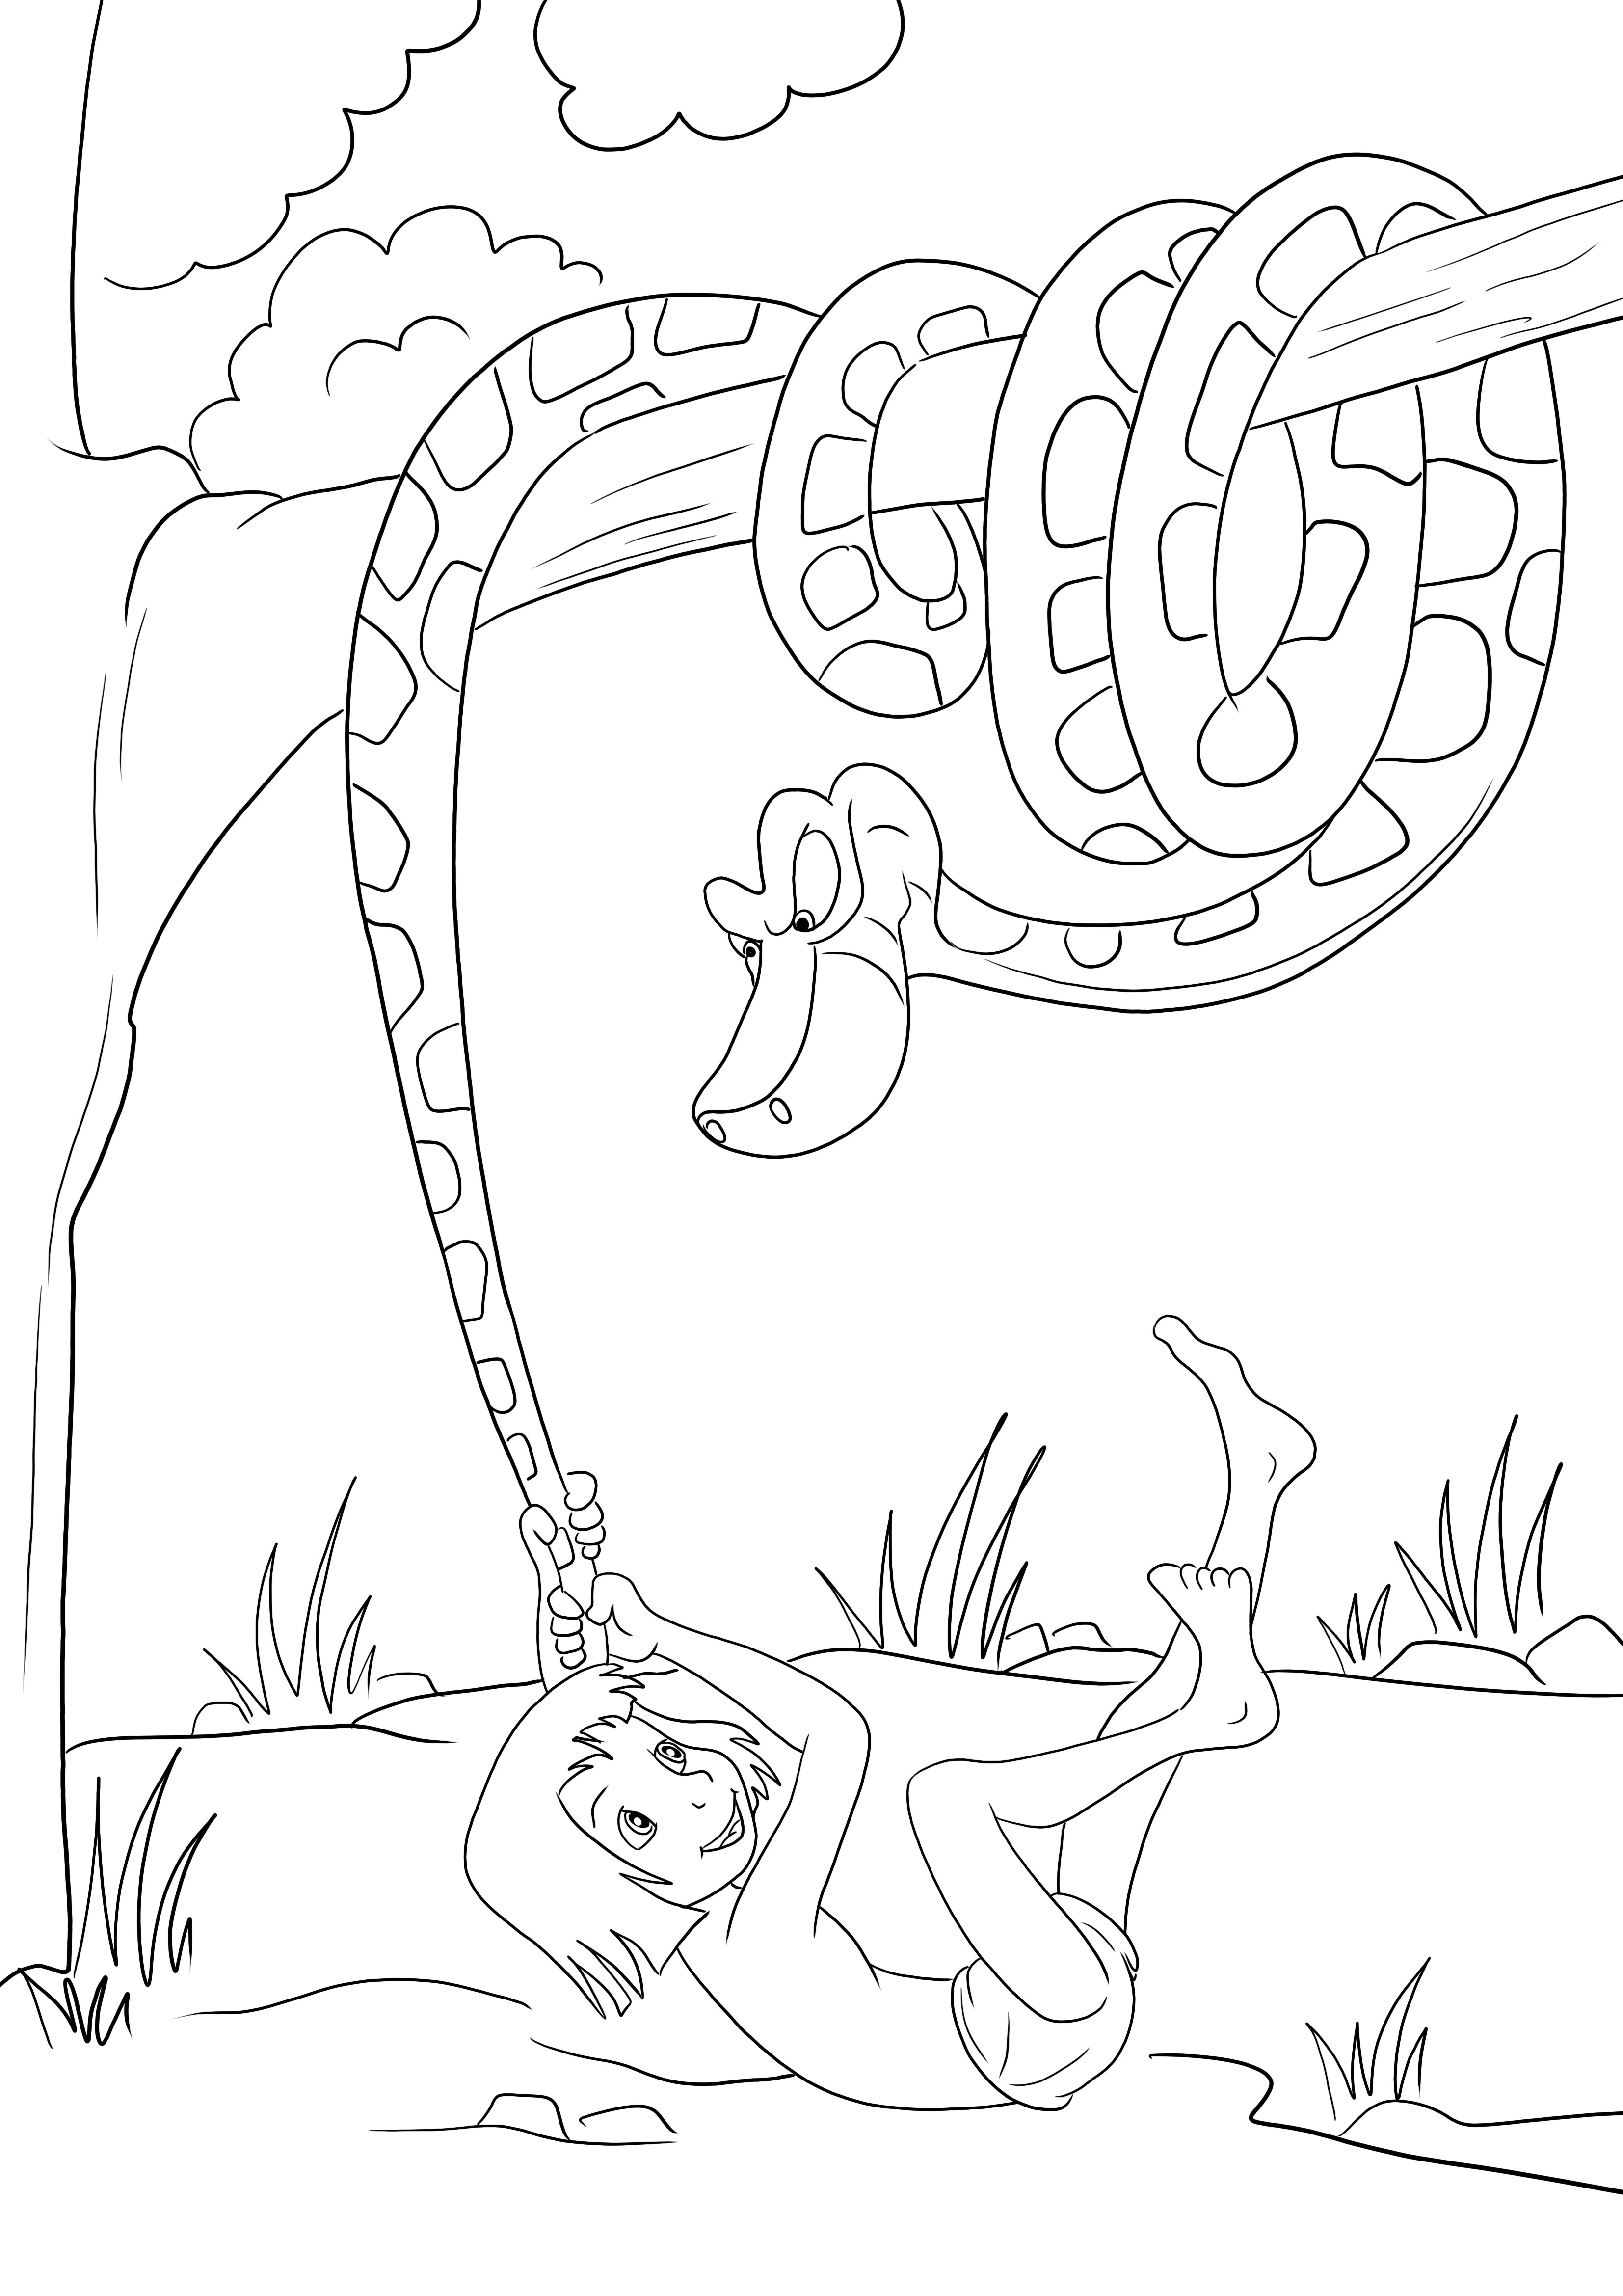 Mowgli puxando Kaa sem cauda para colorir e imprimir para as crianças se divertirem